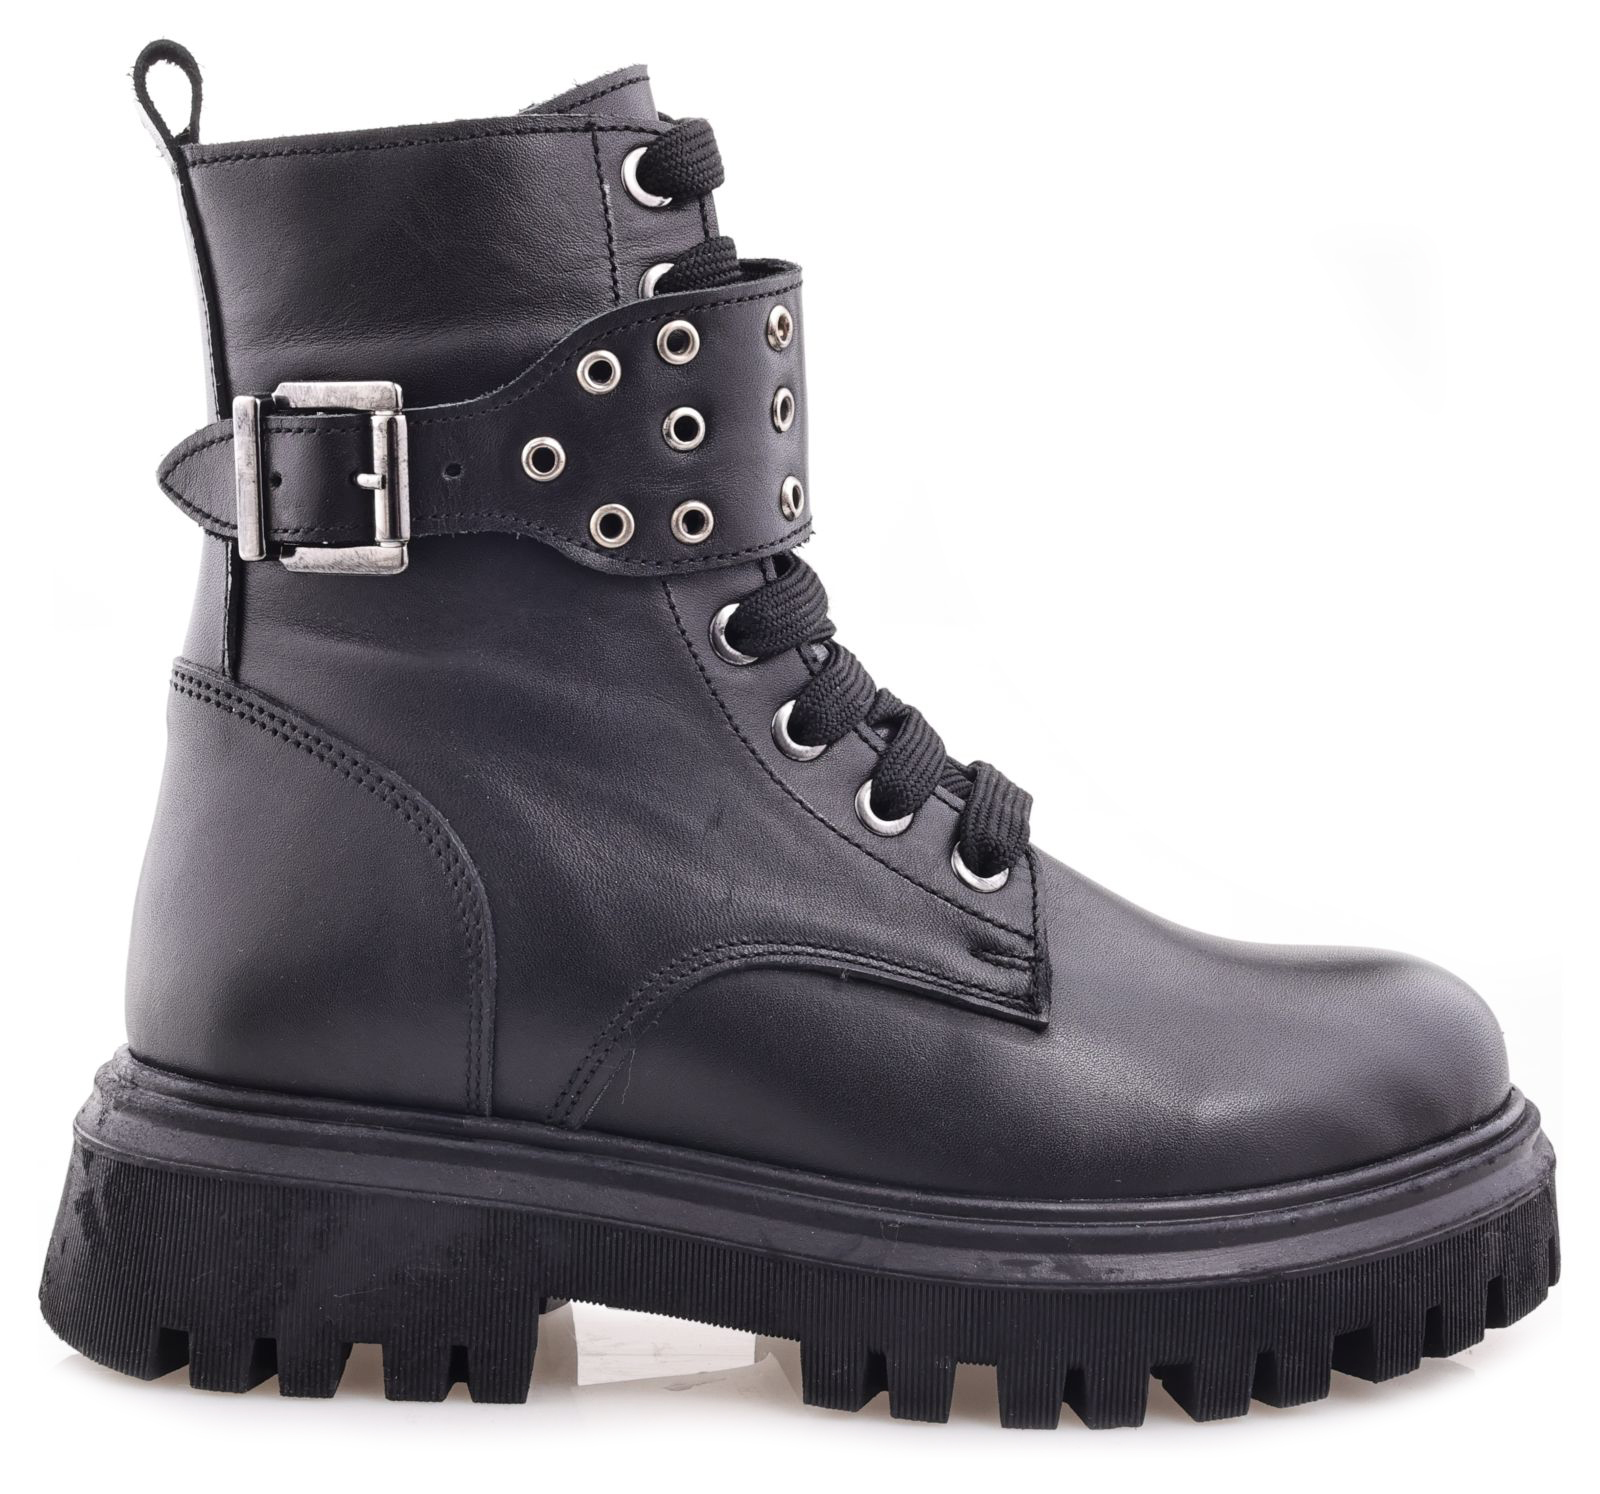 Ботинки Minimen для девочек, чёрные, размер 35, 2666-44-23B-02 2666 боланьо р